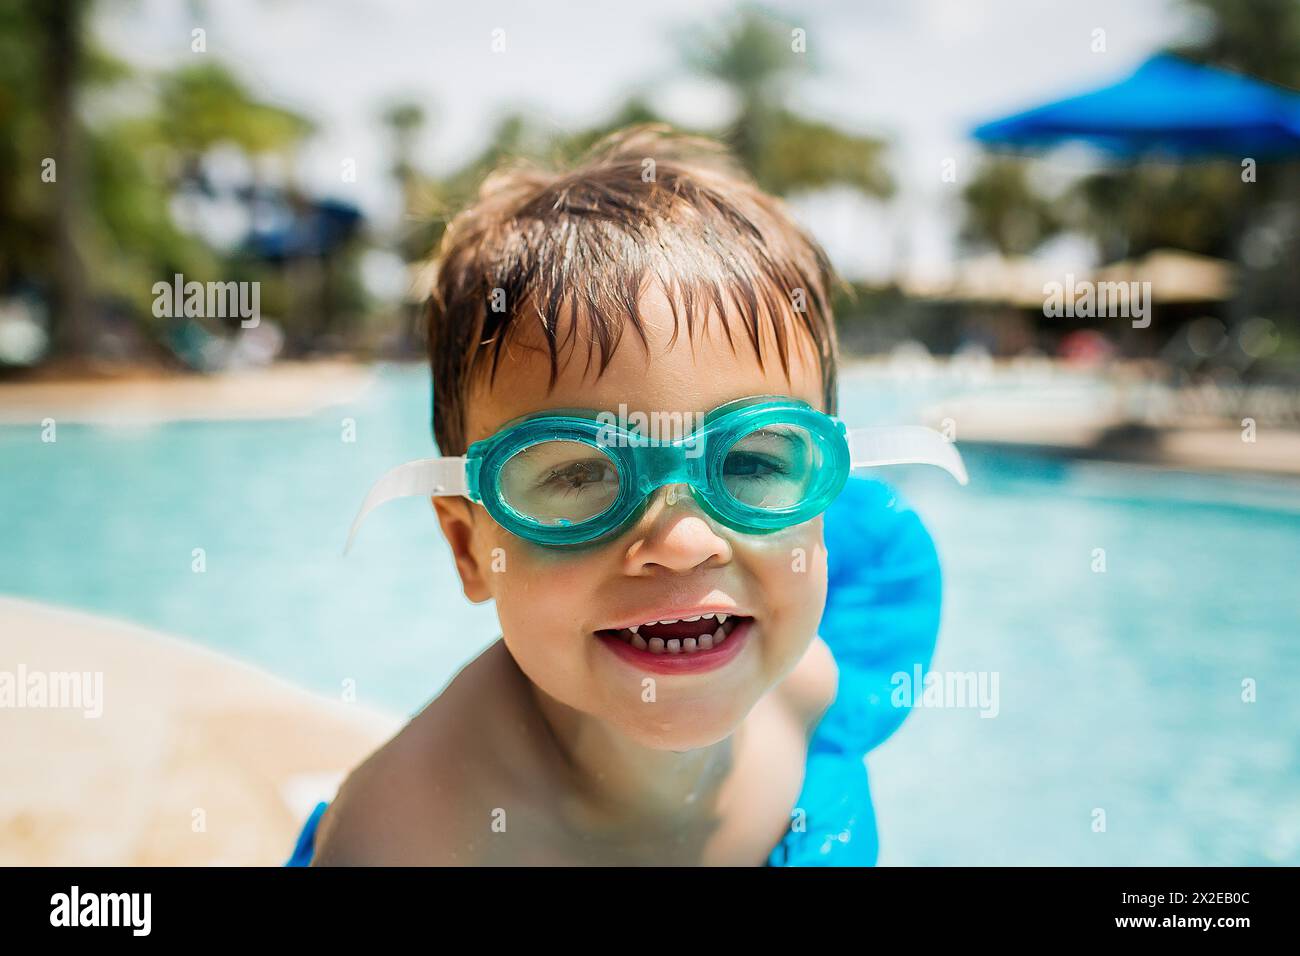 Enfant souriant dans des lunettes prêt pour le plaisir au bord de la piscine Banque D'Images